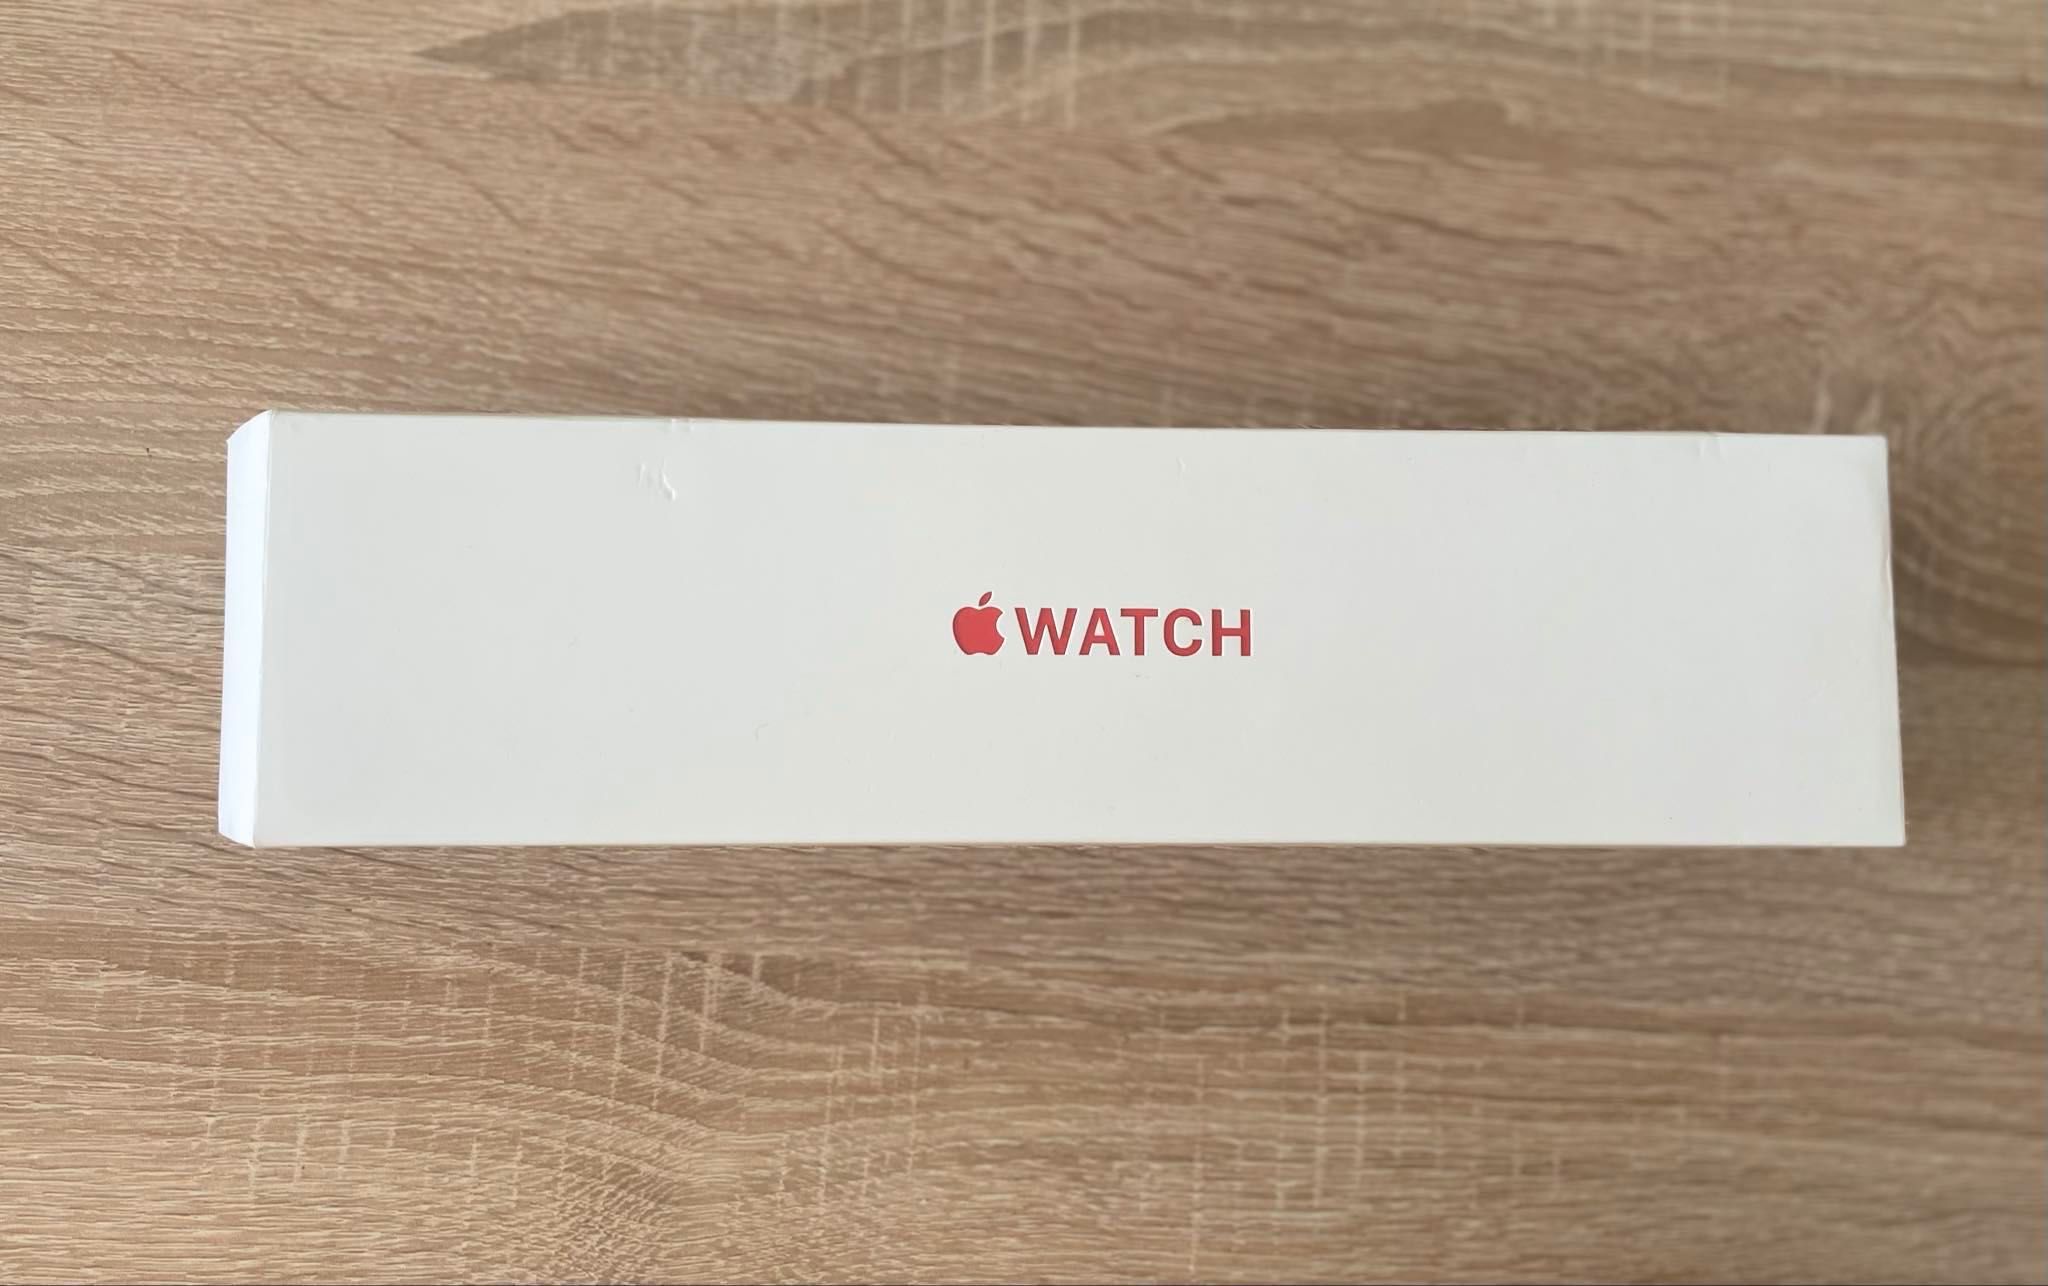 Apple Watch 6 44 mm